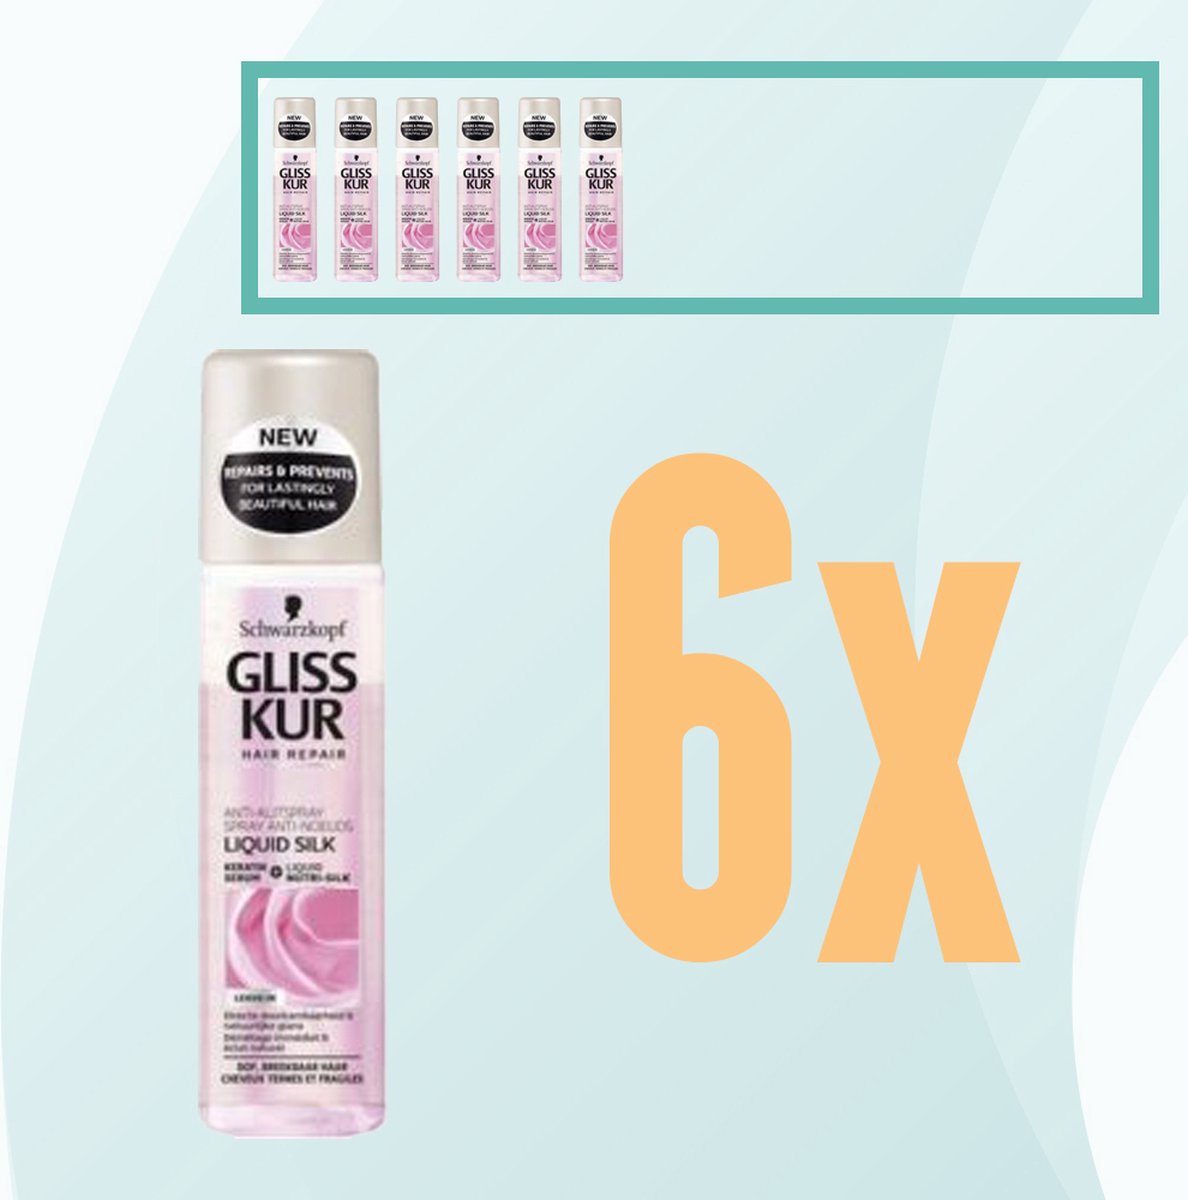 Gliss Kur - Liguid Silk Gloss - Schwarzkopf - Anti Klit Spray - 6x 200 ml - Voordeelpakket - Voordeelbundel - Gliss Kur Pakket - Schwarzkopf Pakket-